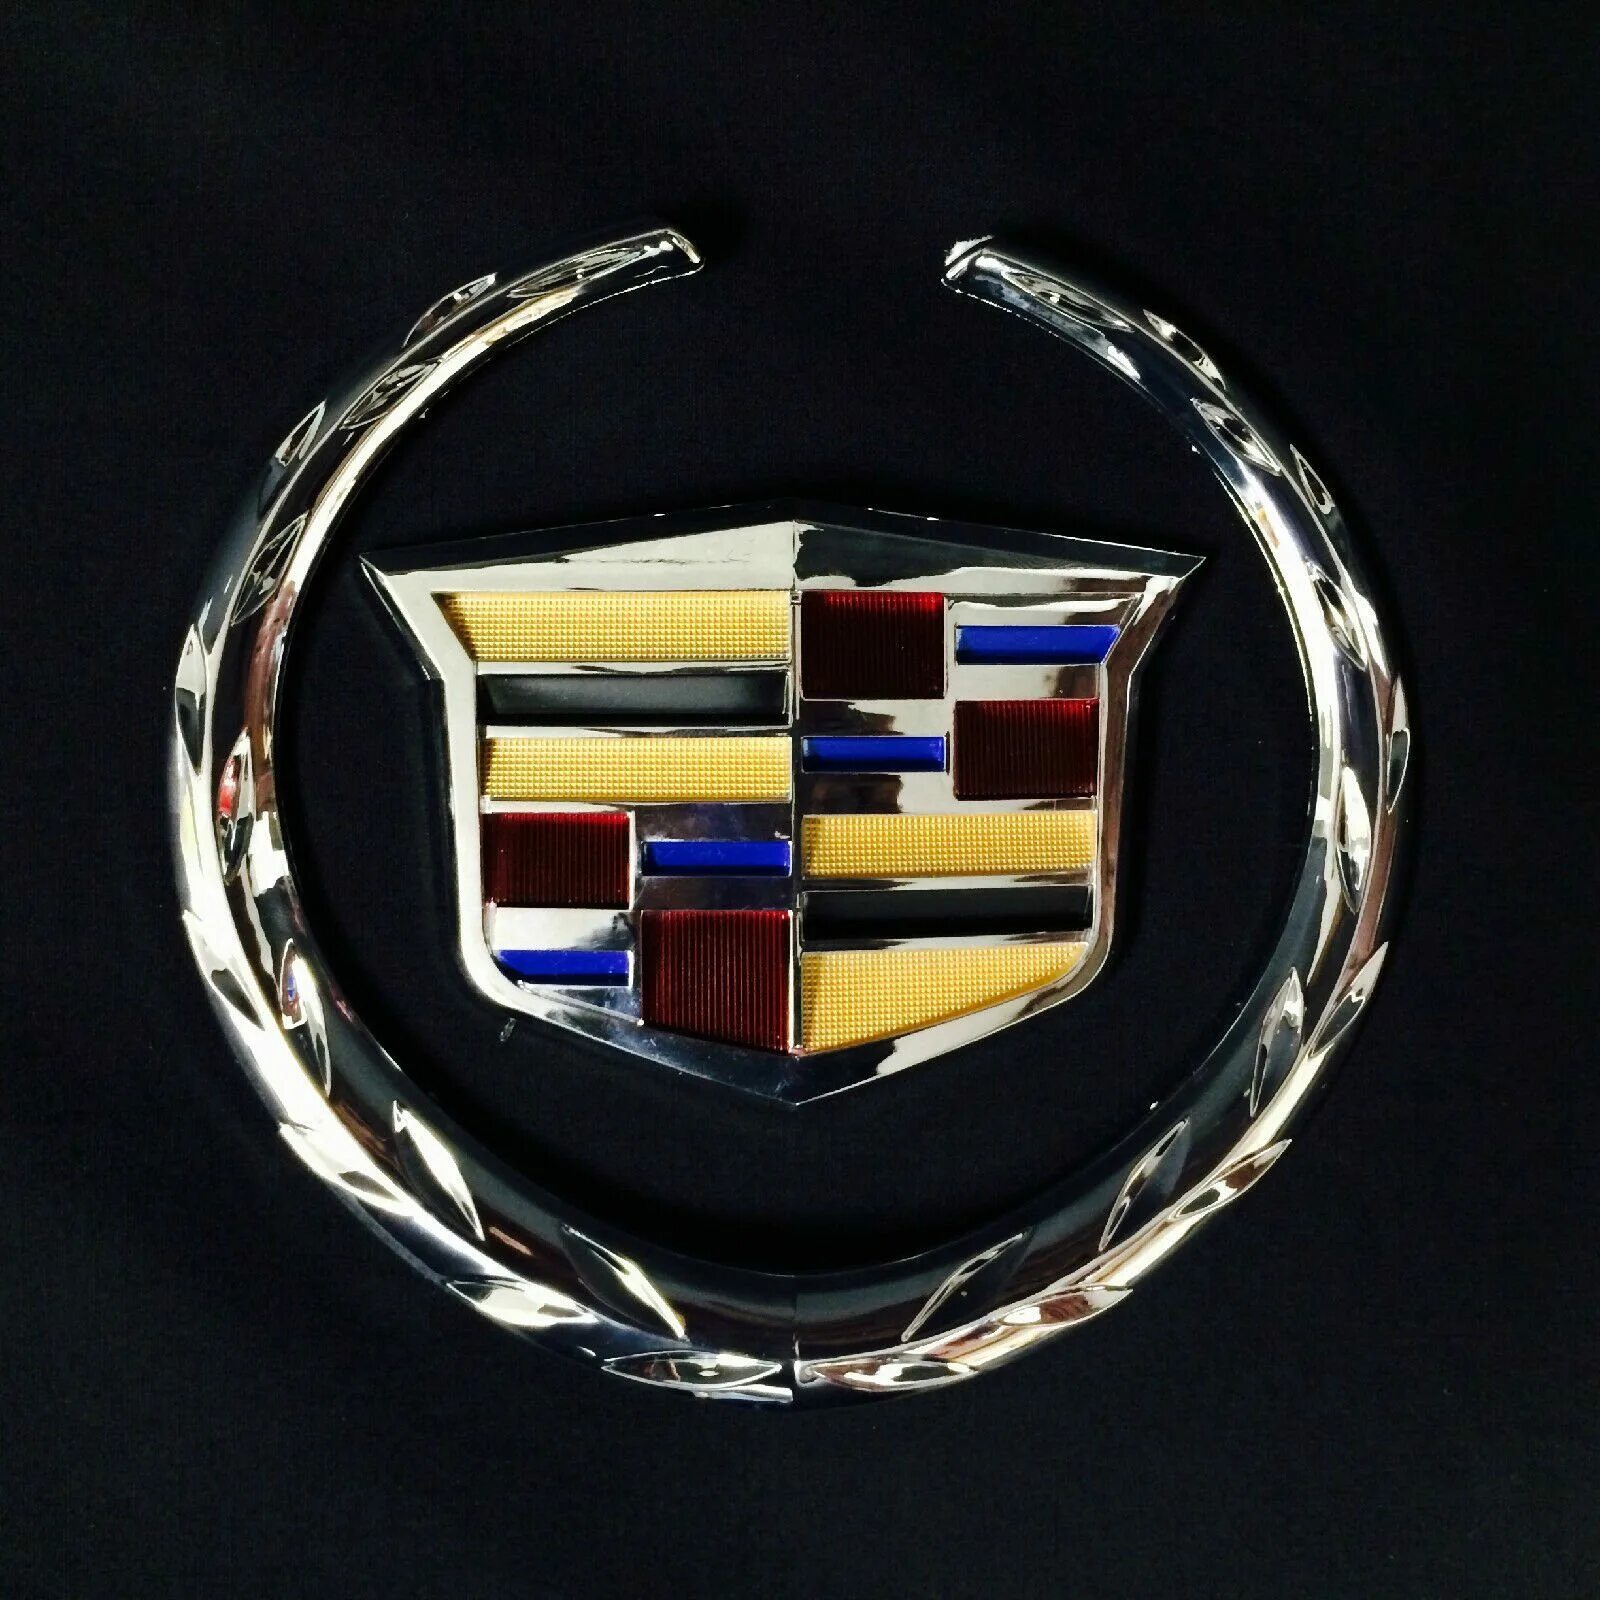 Кадиллак марка. Значок Cadillac Эскалейд. Cadillac Escalade марка. Значок Кадиллака и Джилли. Кадиллак логотип